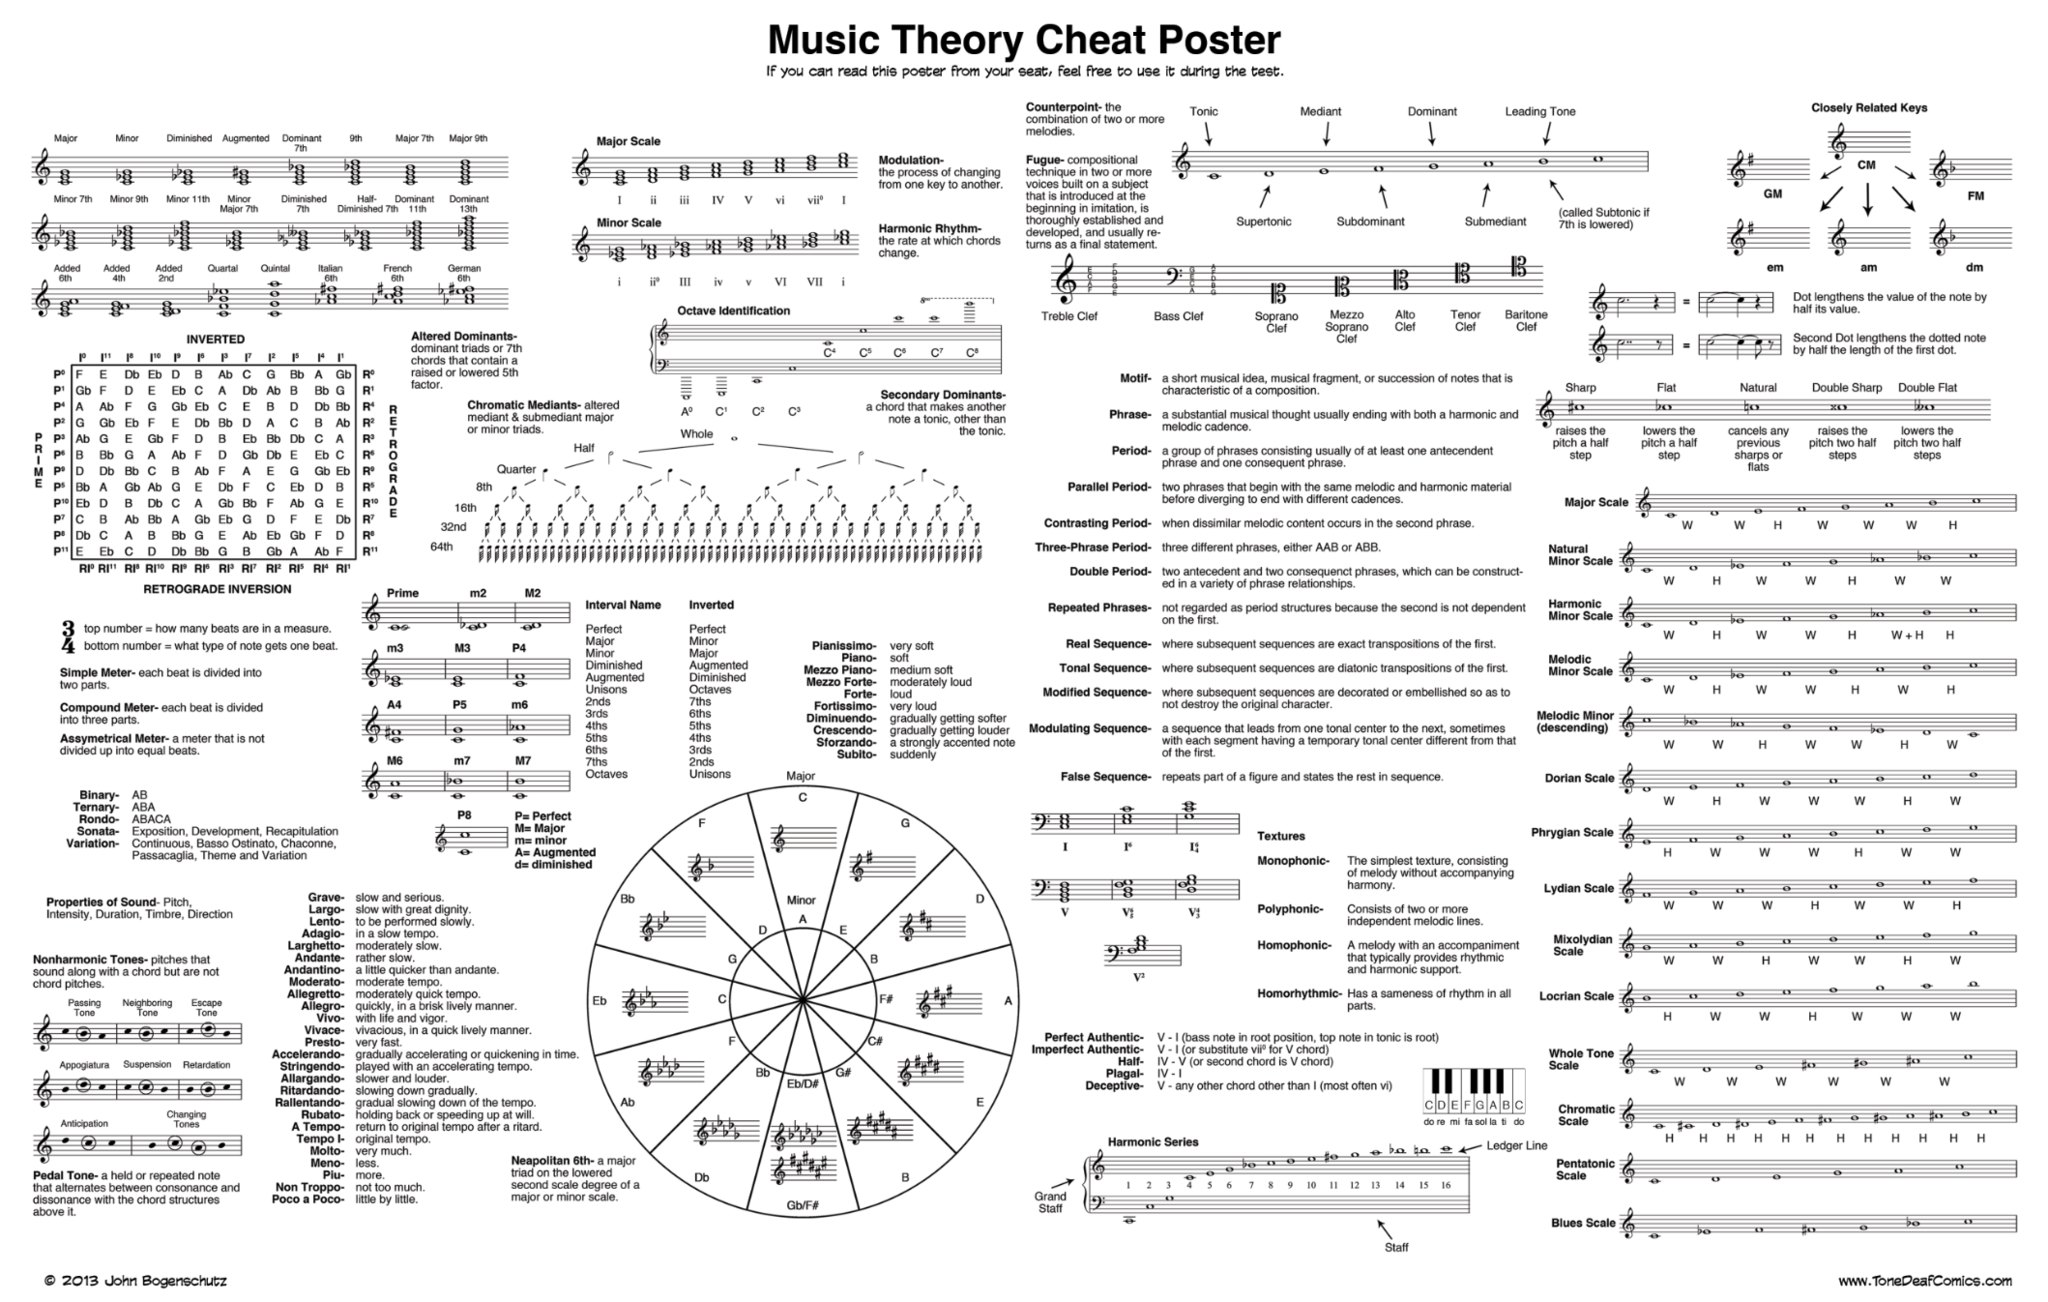 Music Theory Cheat Sheet - Free PDF Download - Gravitas Create